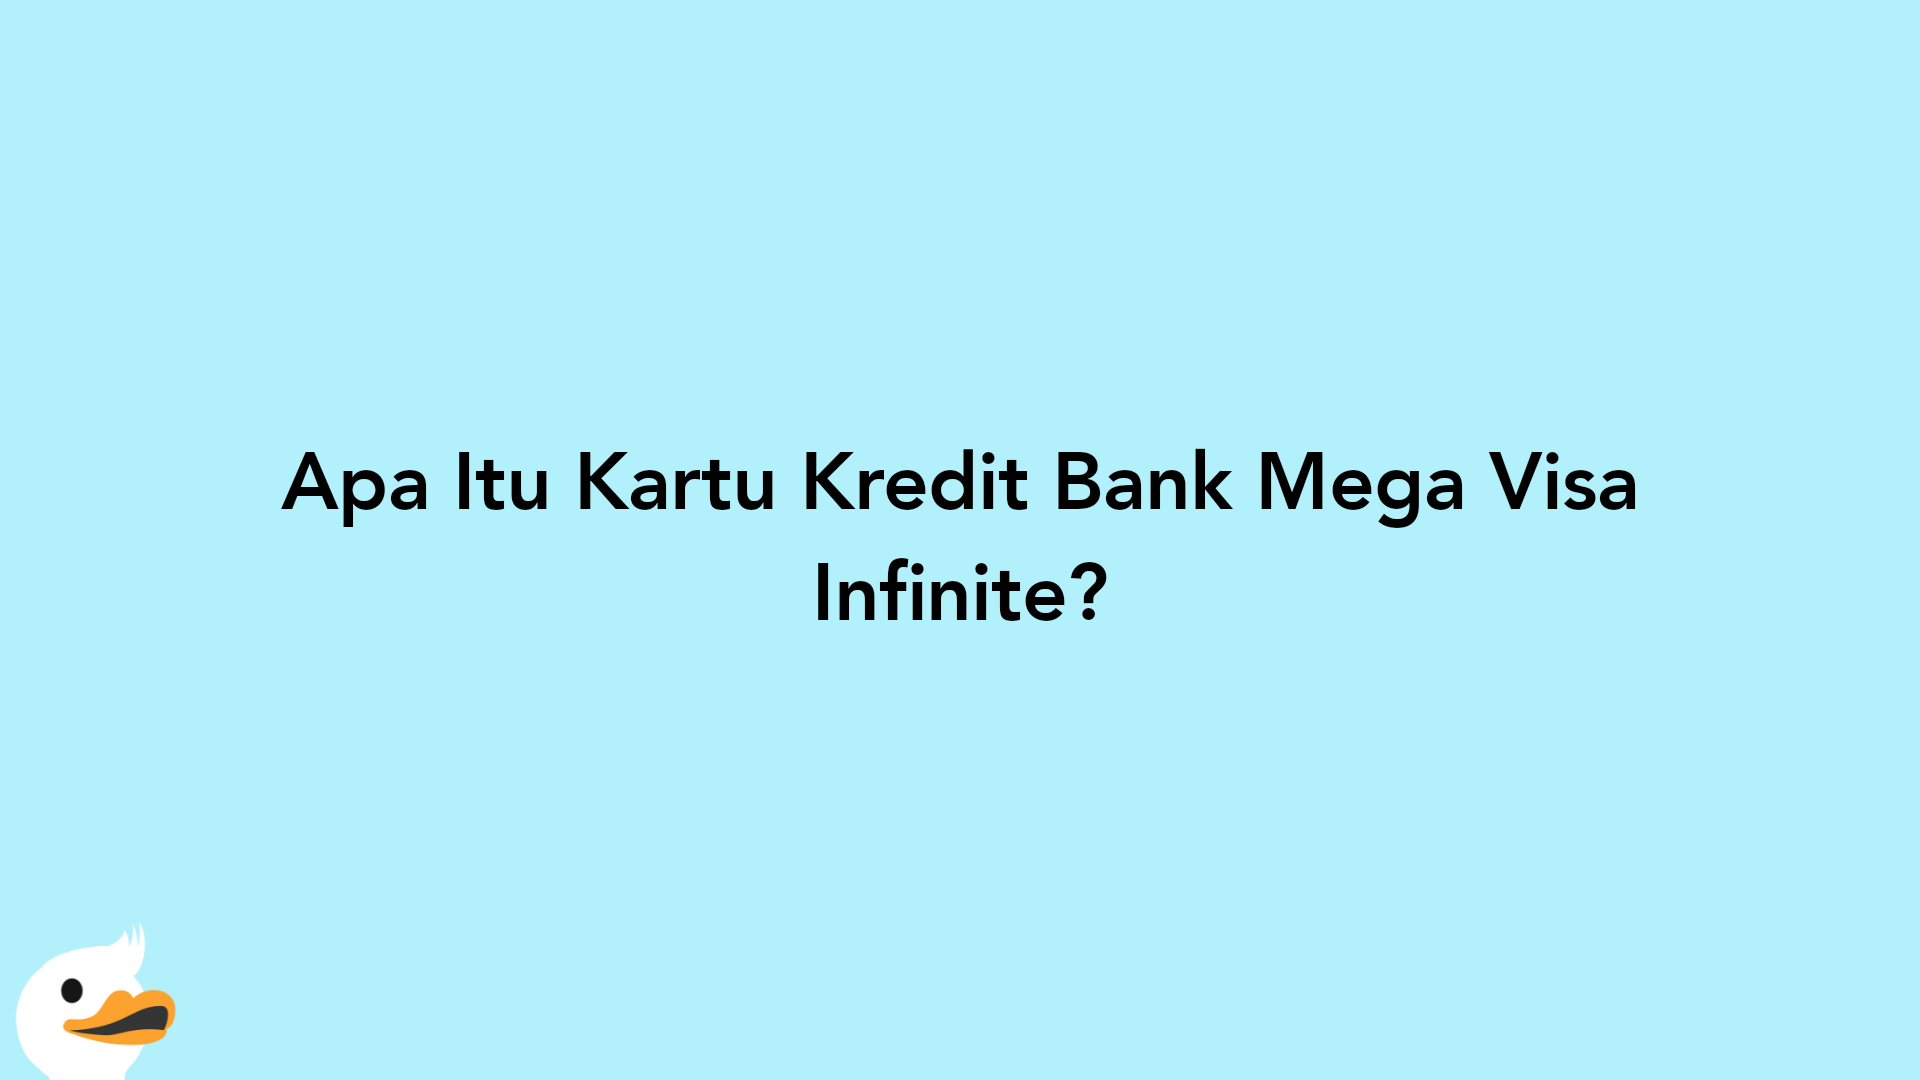 Apa Itu Kartu Kredit Bank Mega Visa Infinite?